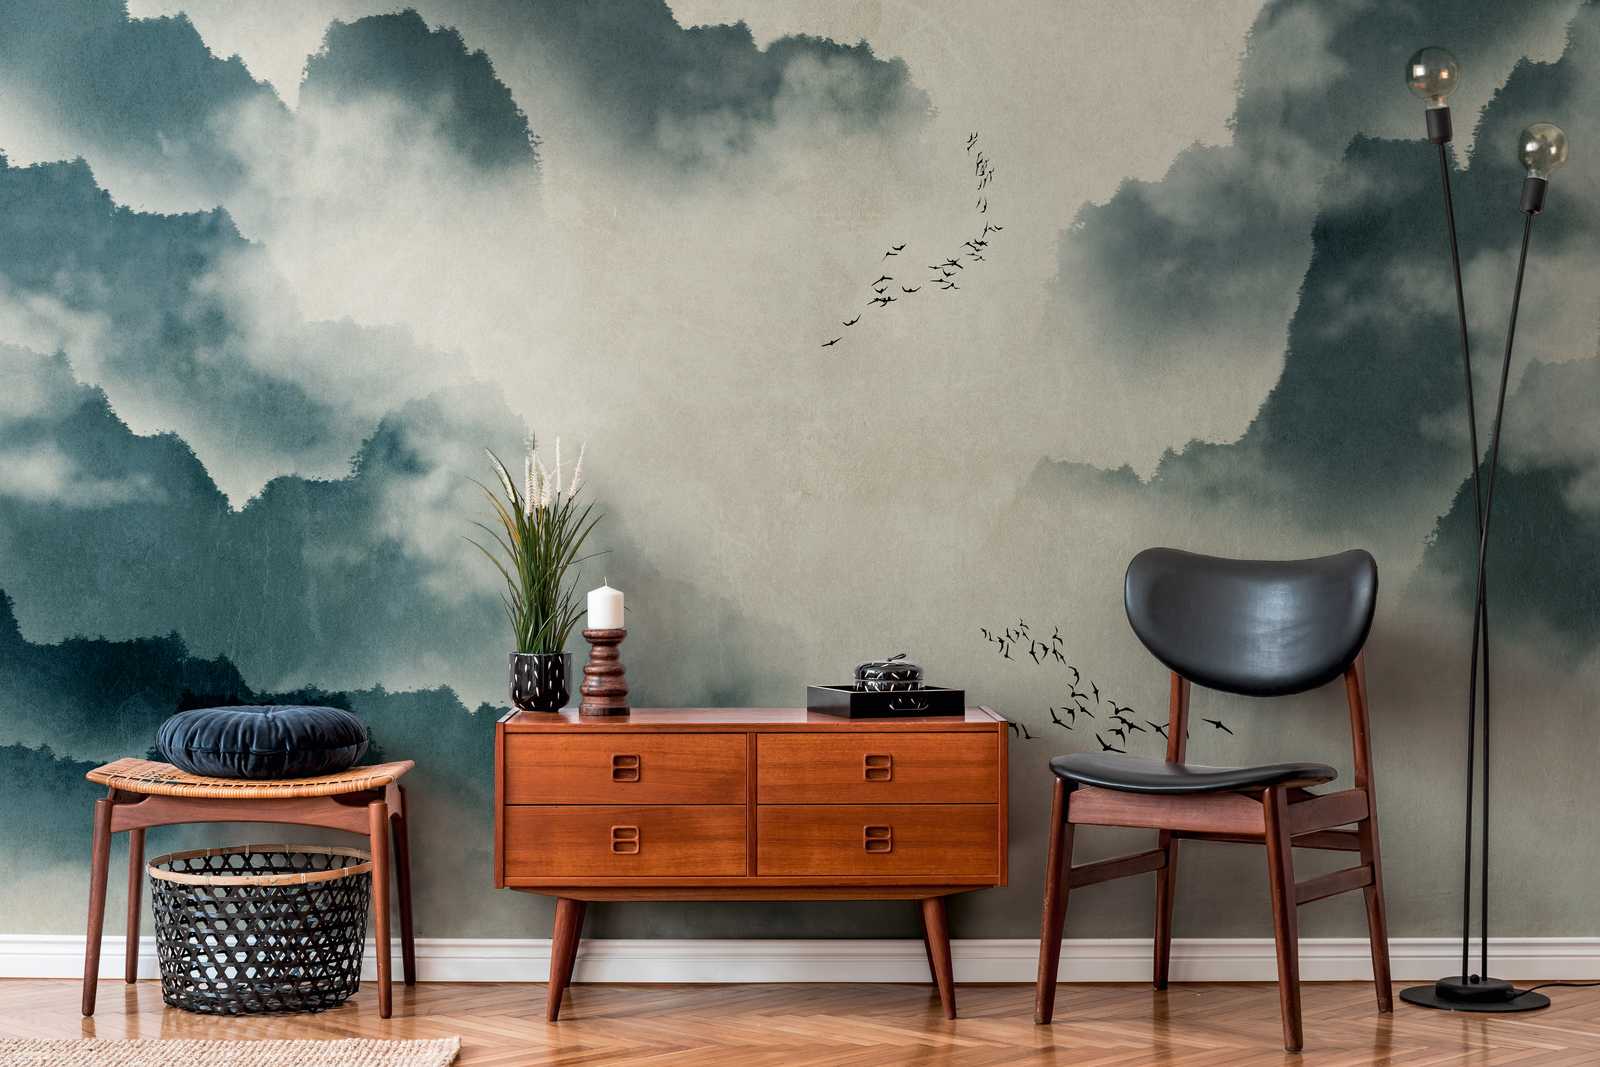             Papier peint Nouveauté | Papier peint à motifs aquarelle avec montagnes, brouillard & vol d'oiseaux
        